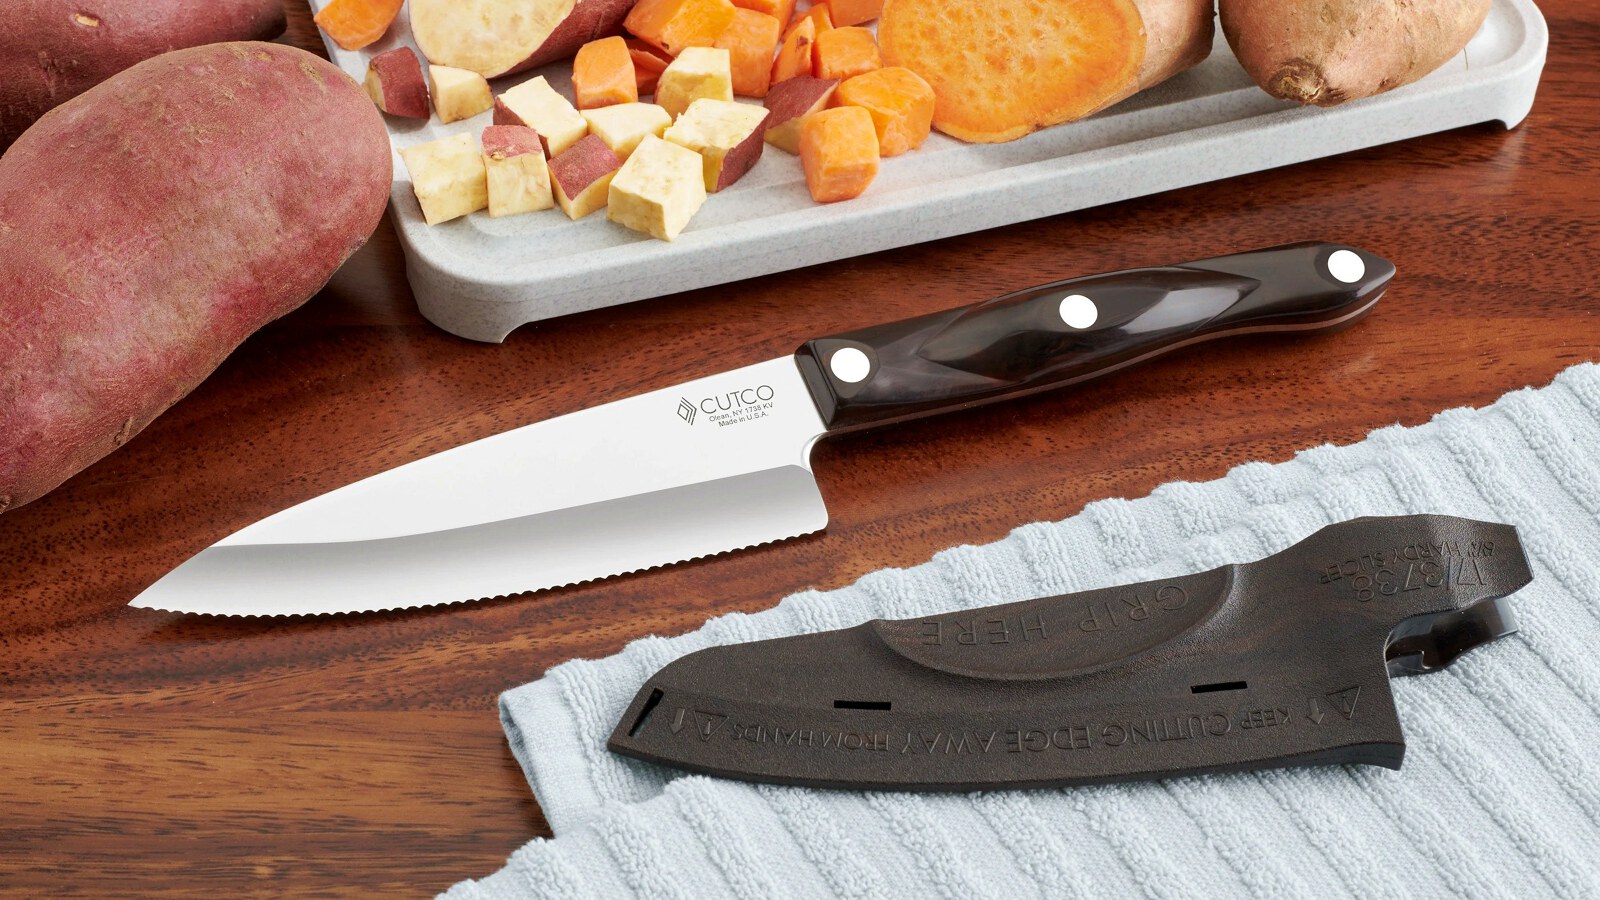 Gourmet Prep Knife with Sheath